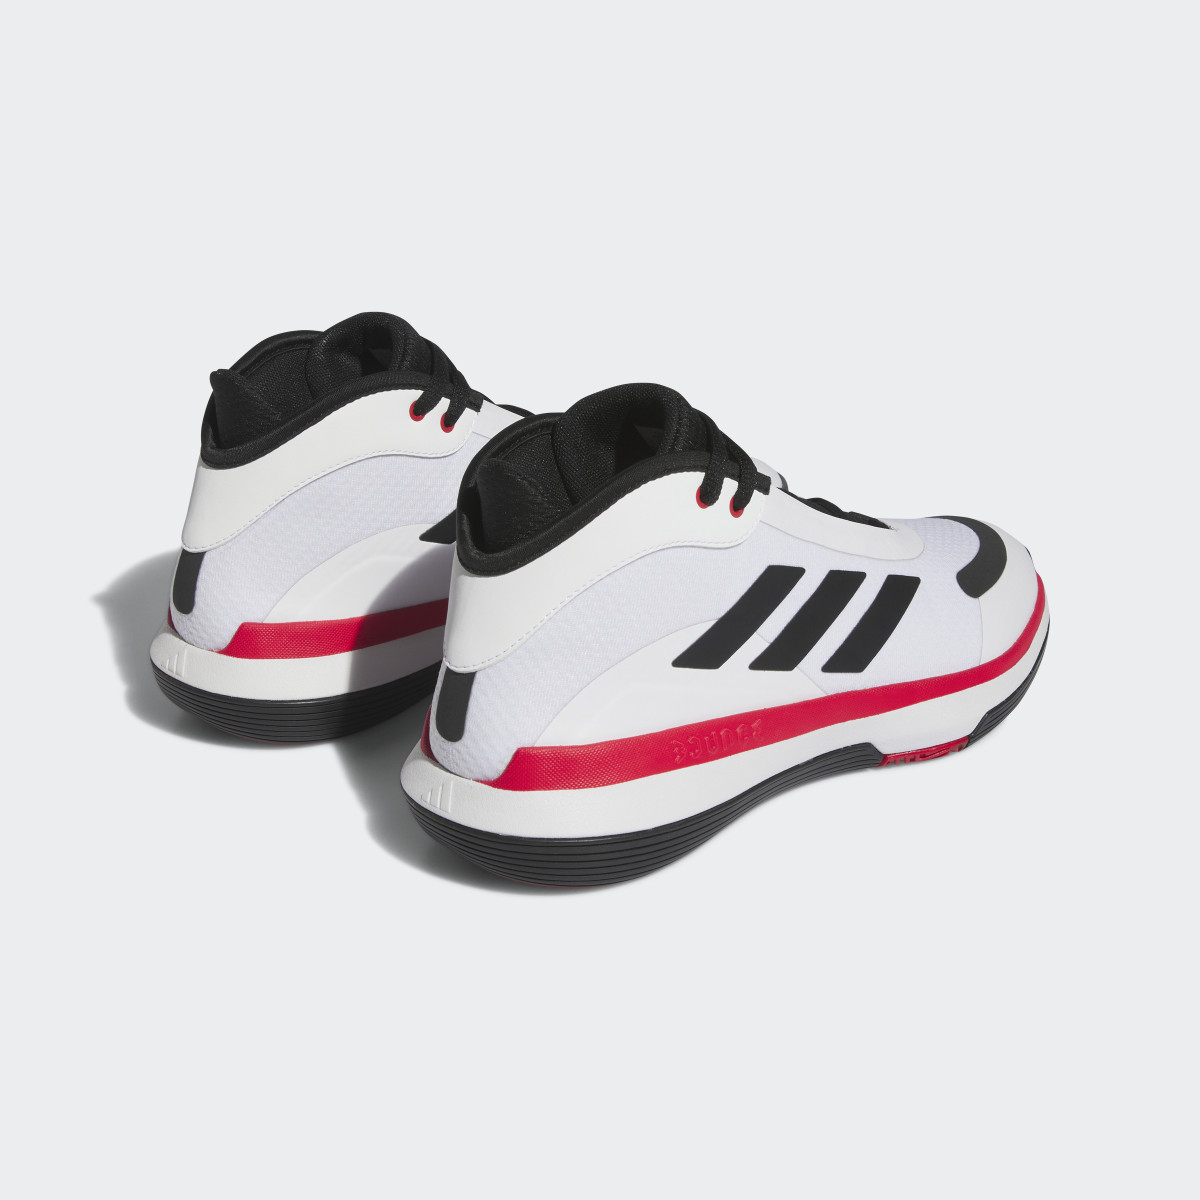 Adidas Scarpe Bounce Legends. 8